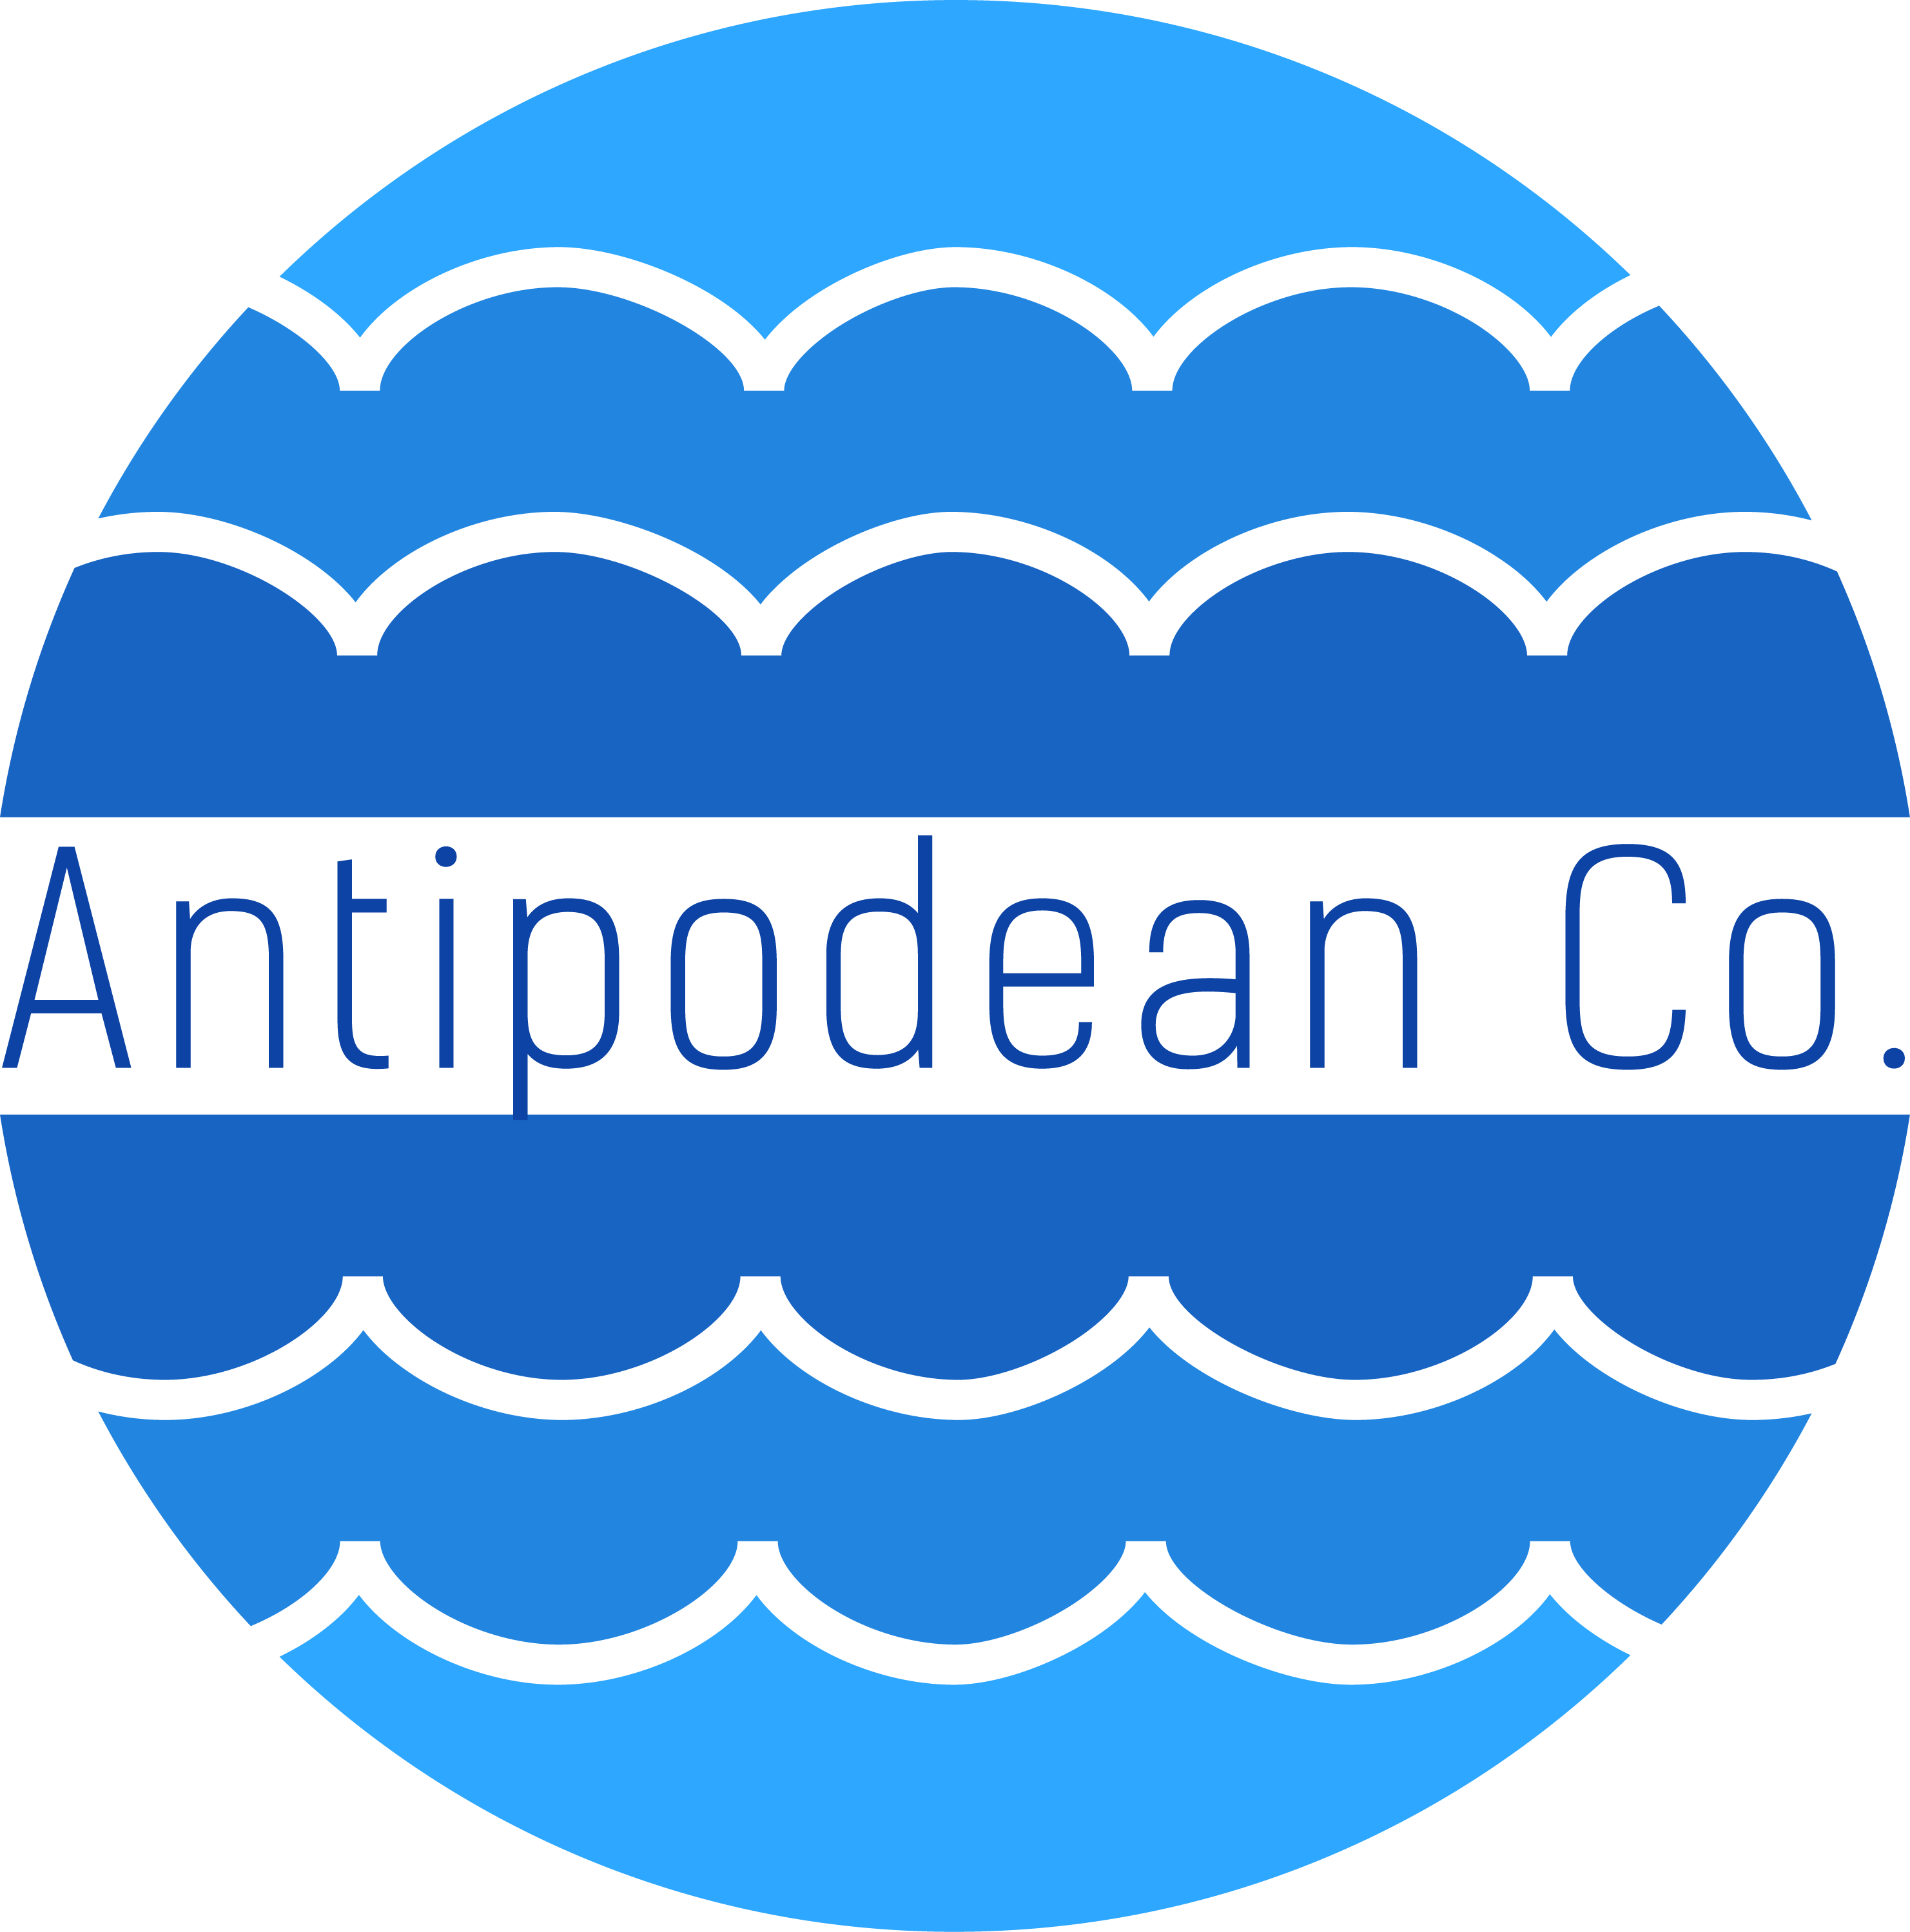 Antipodean Co.